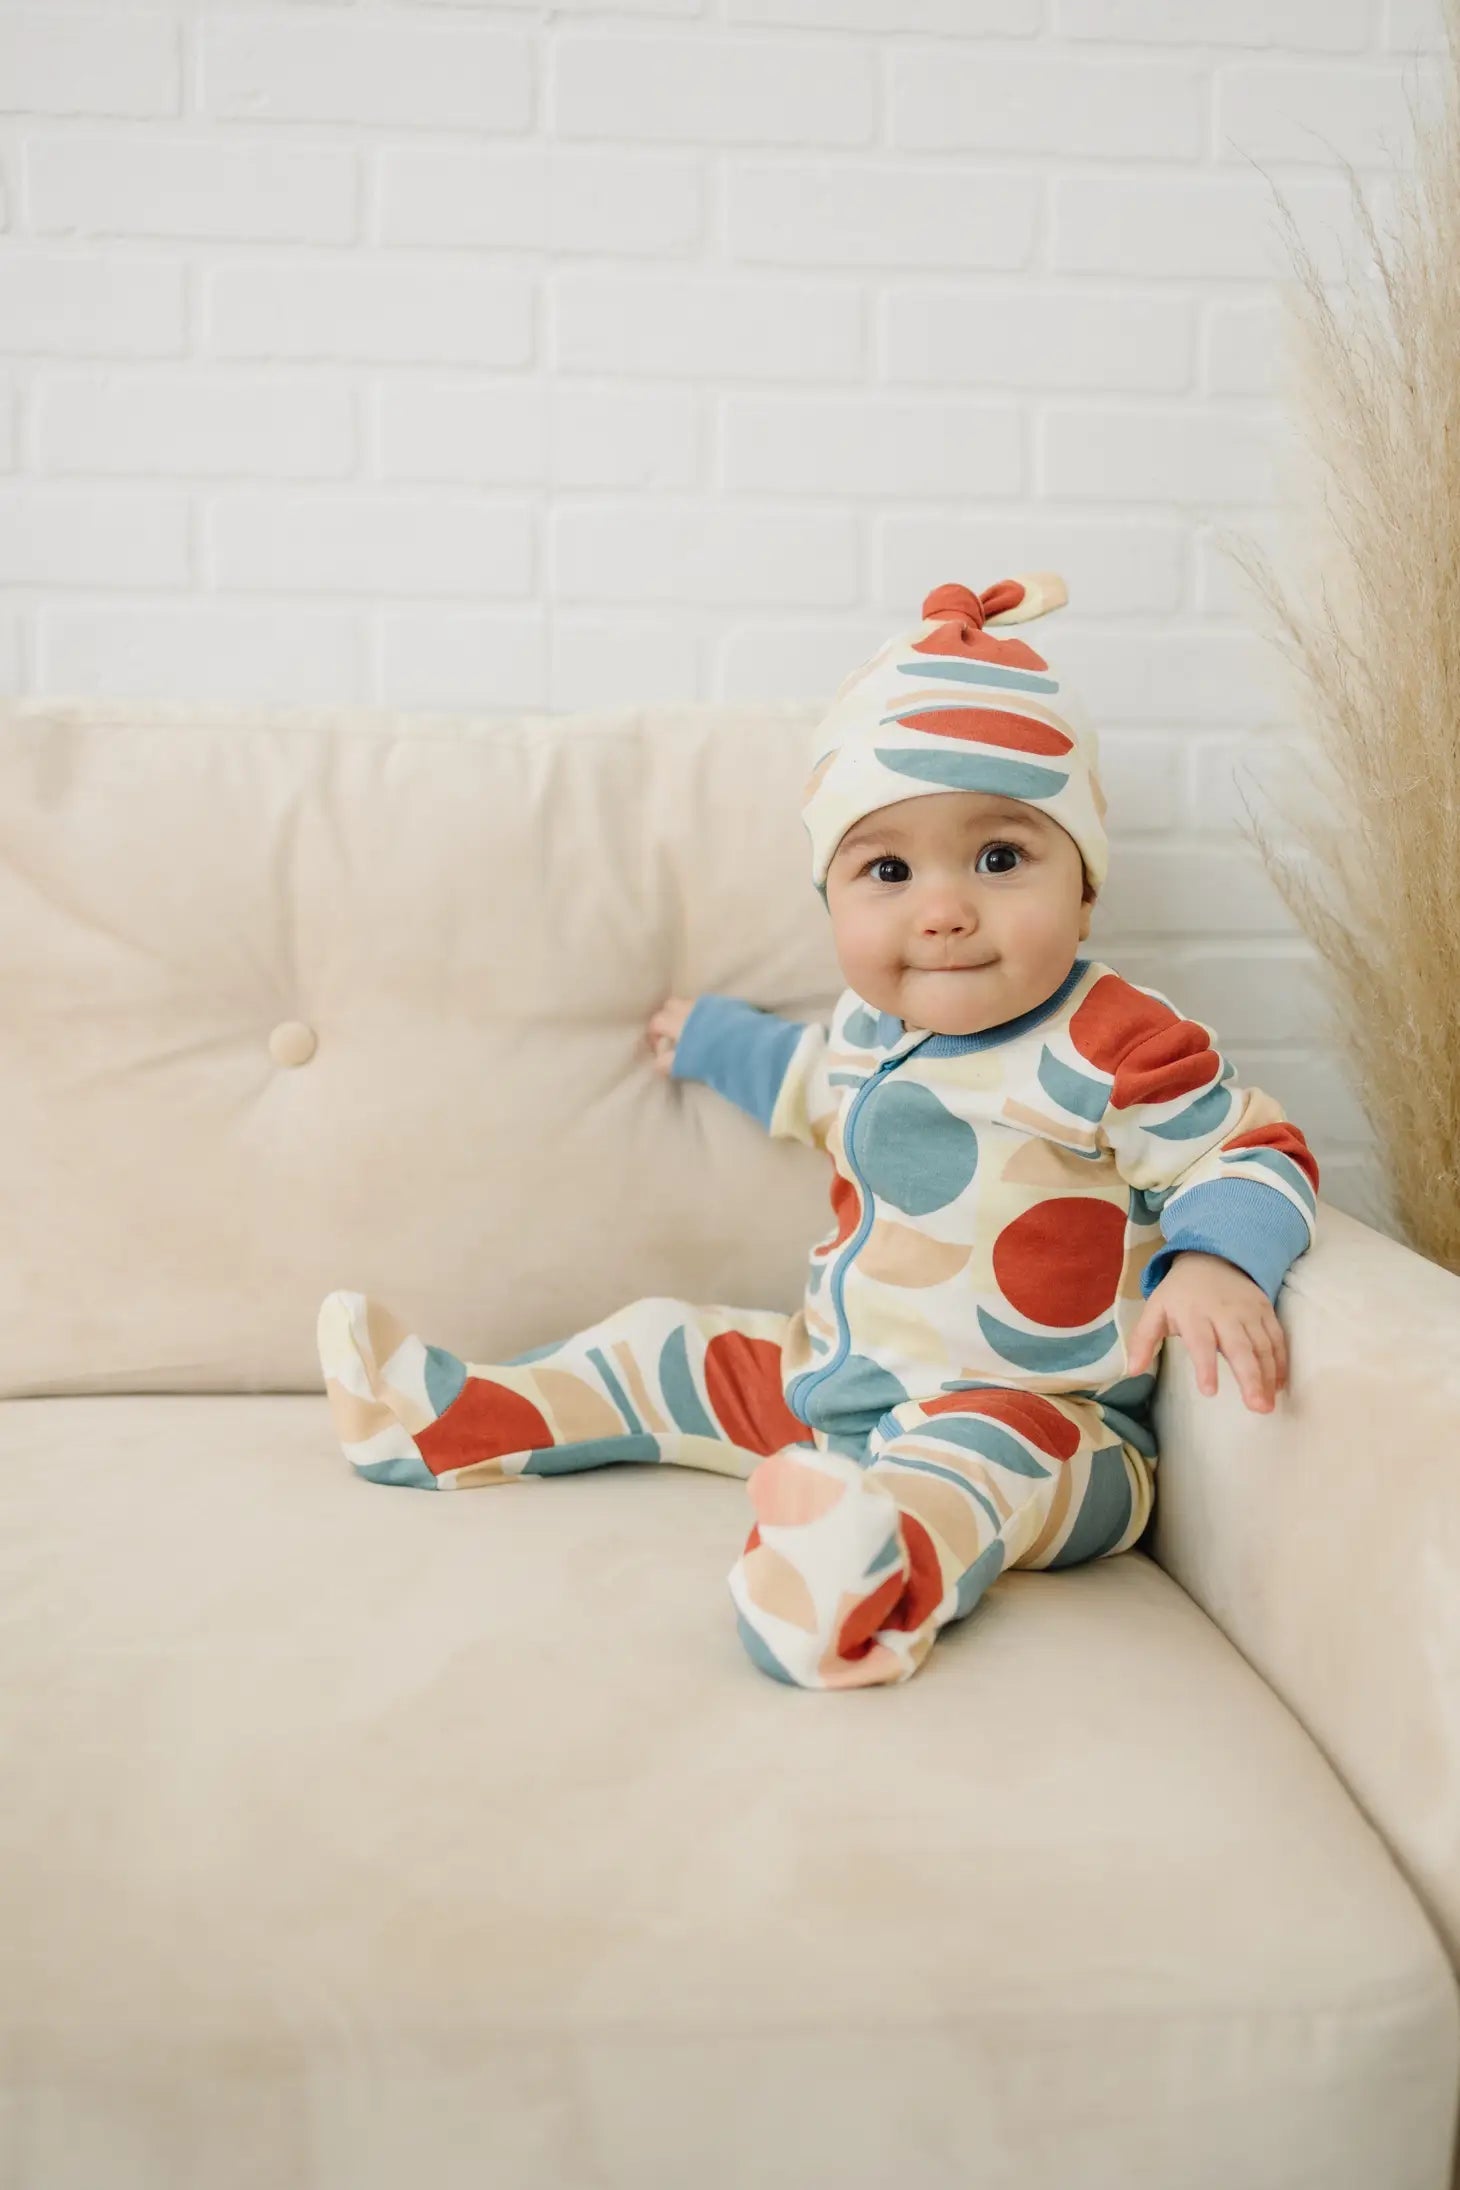 Geometric Moon Baby Footie Pajamas - Wild Child Hat CoCat & DogmaPajamas